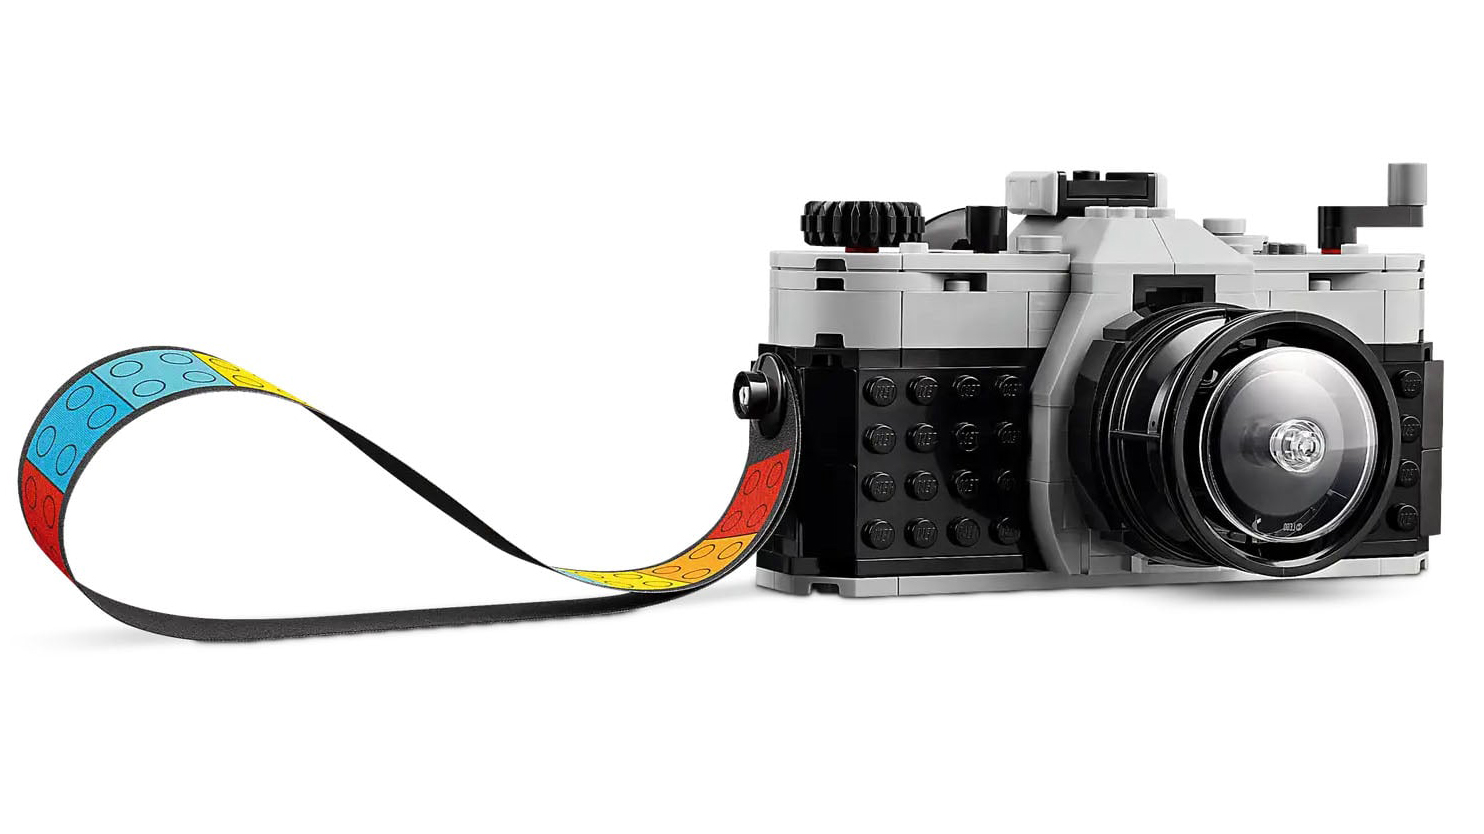 LEGO Retro Kamera Fotografcilar icin Eglenceli ve Uygun Fiyatli Bir Oyuncaktir